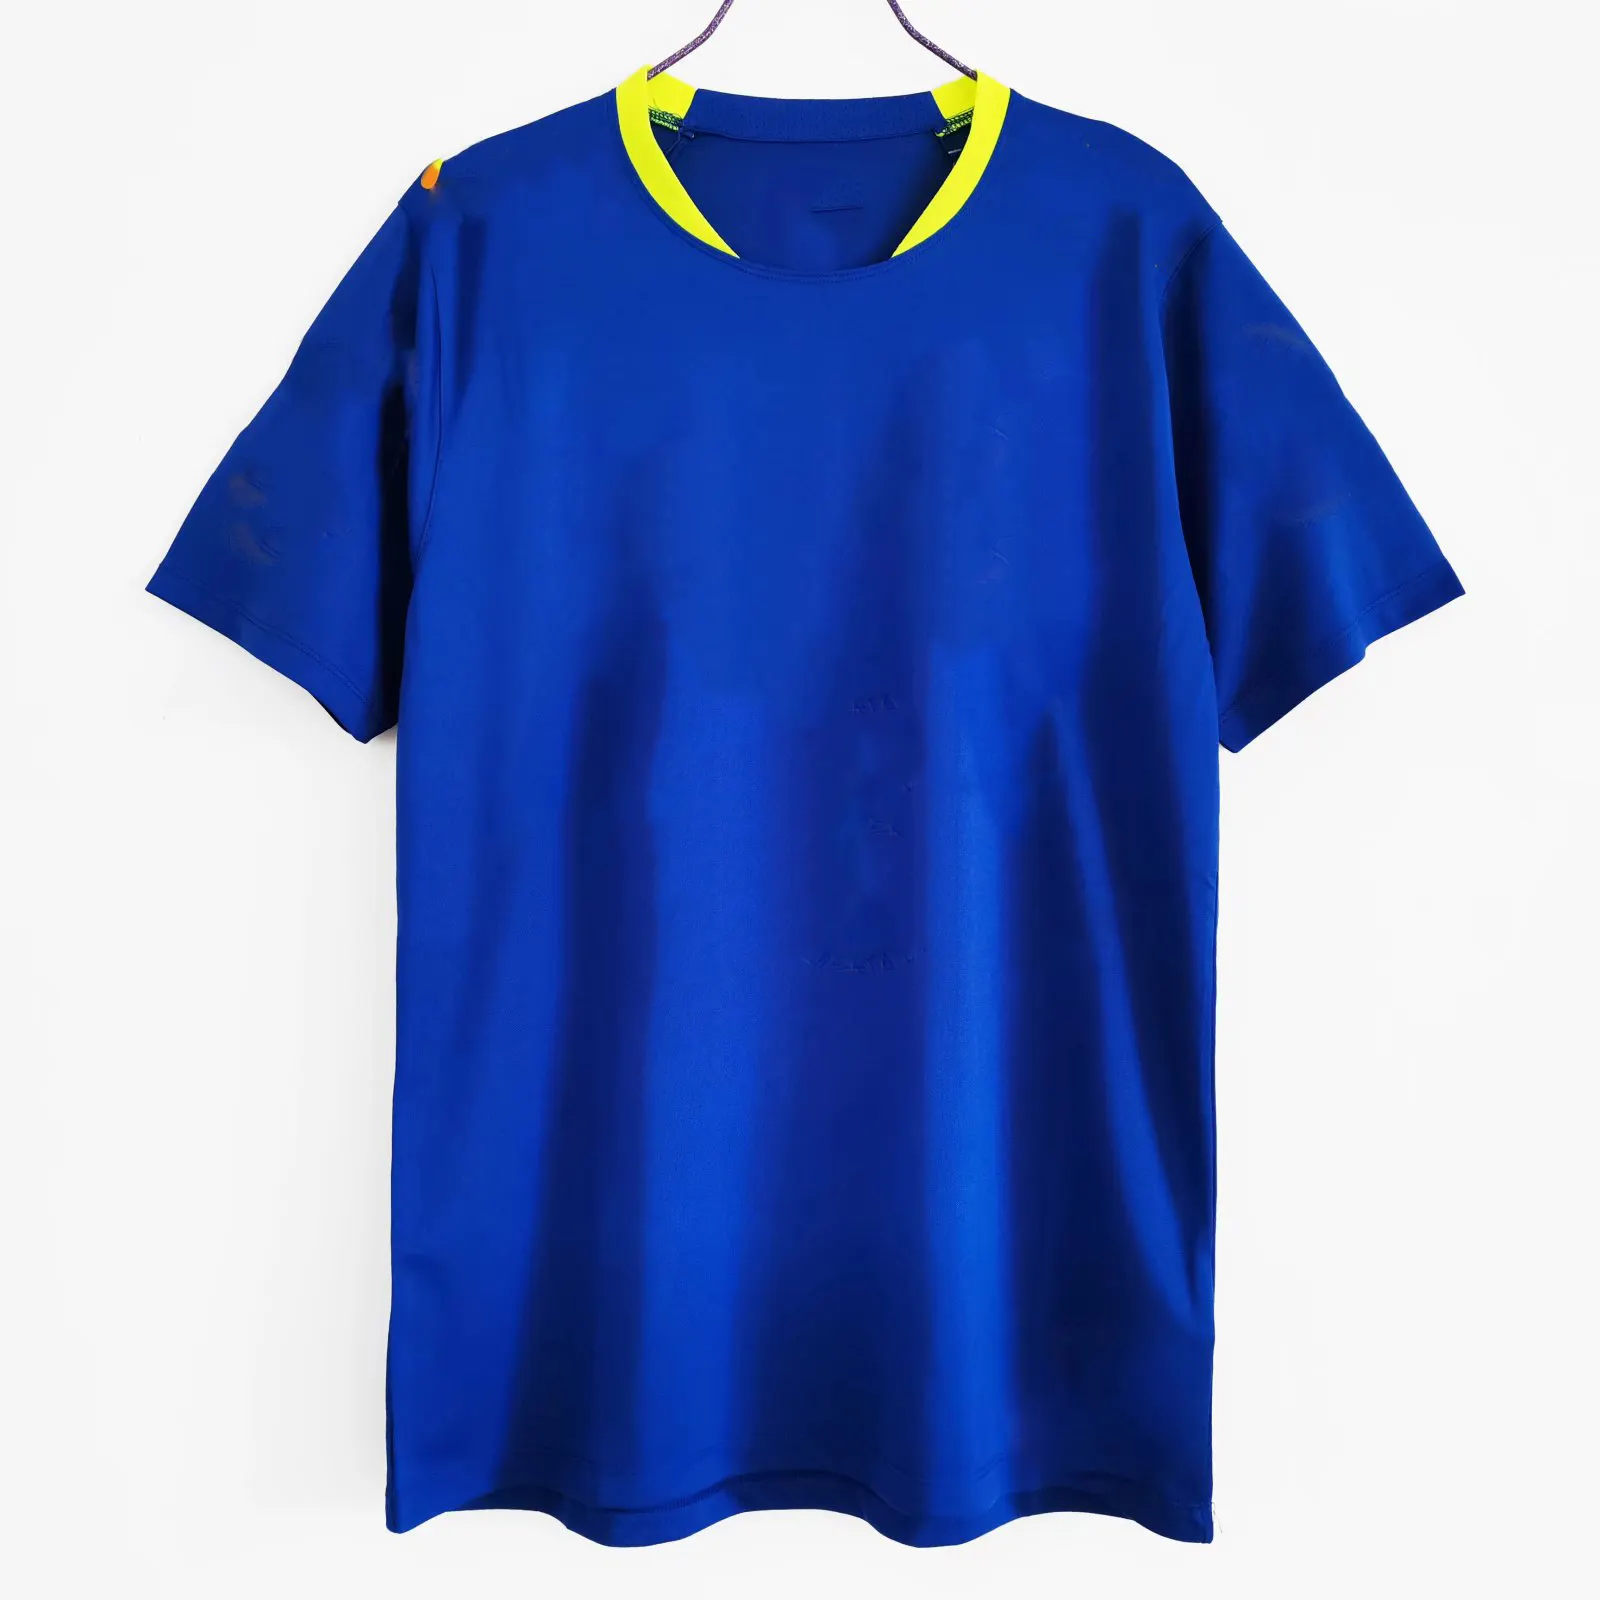 Sublimación Retro Camisetas de fútbol Brasil Equipo de campo Manga corta y larga Camiseta de fútbol Estilo antiguo